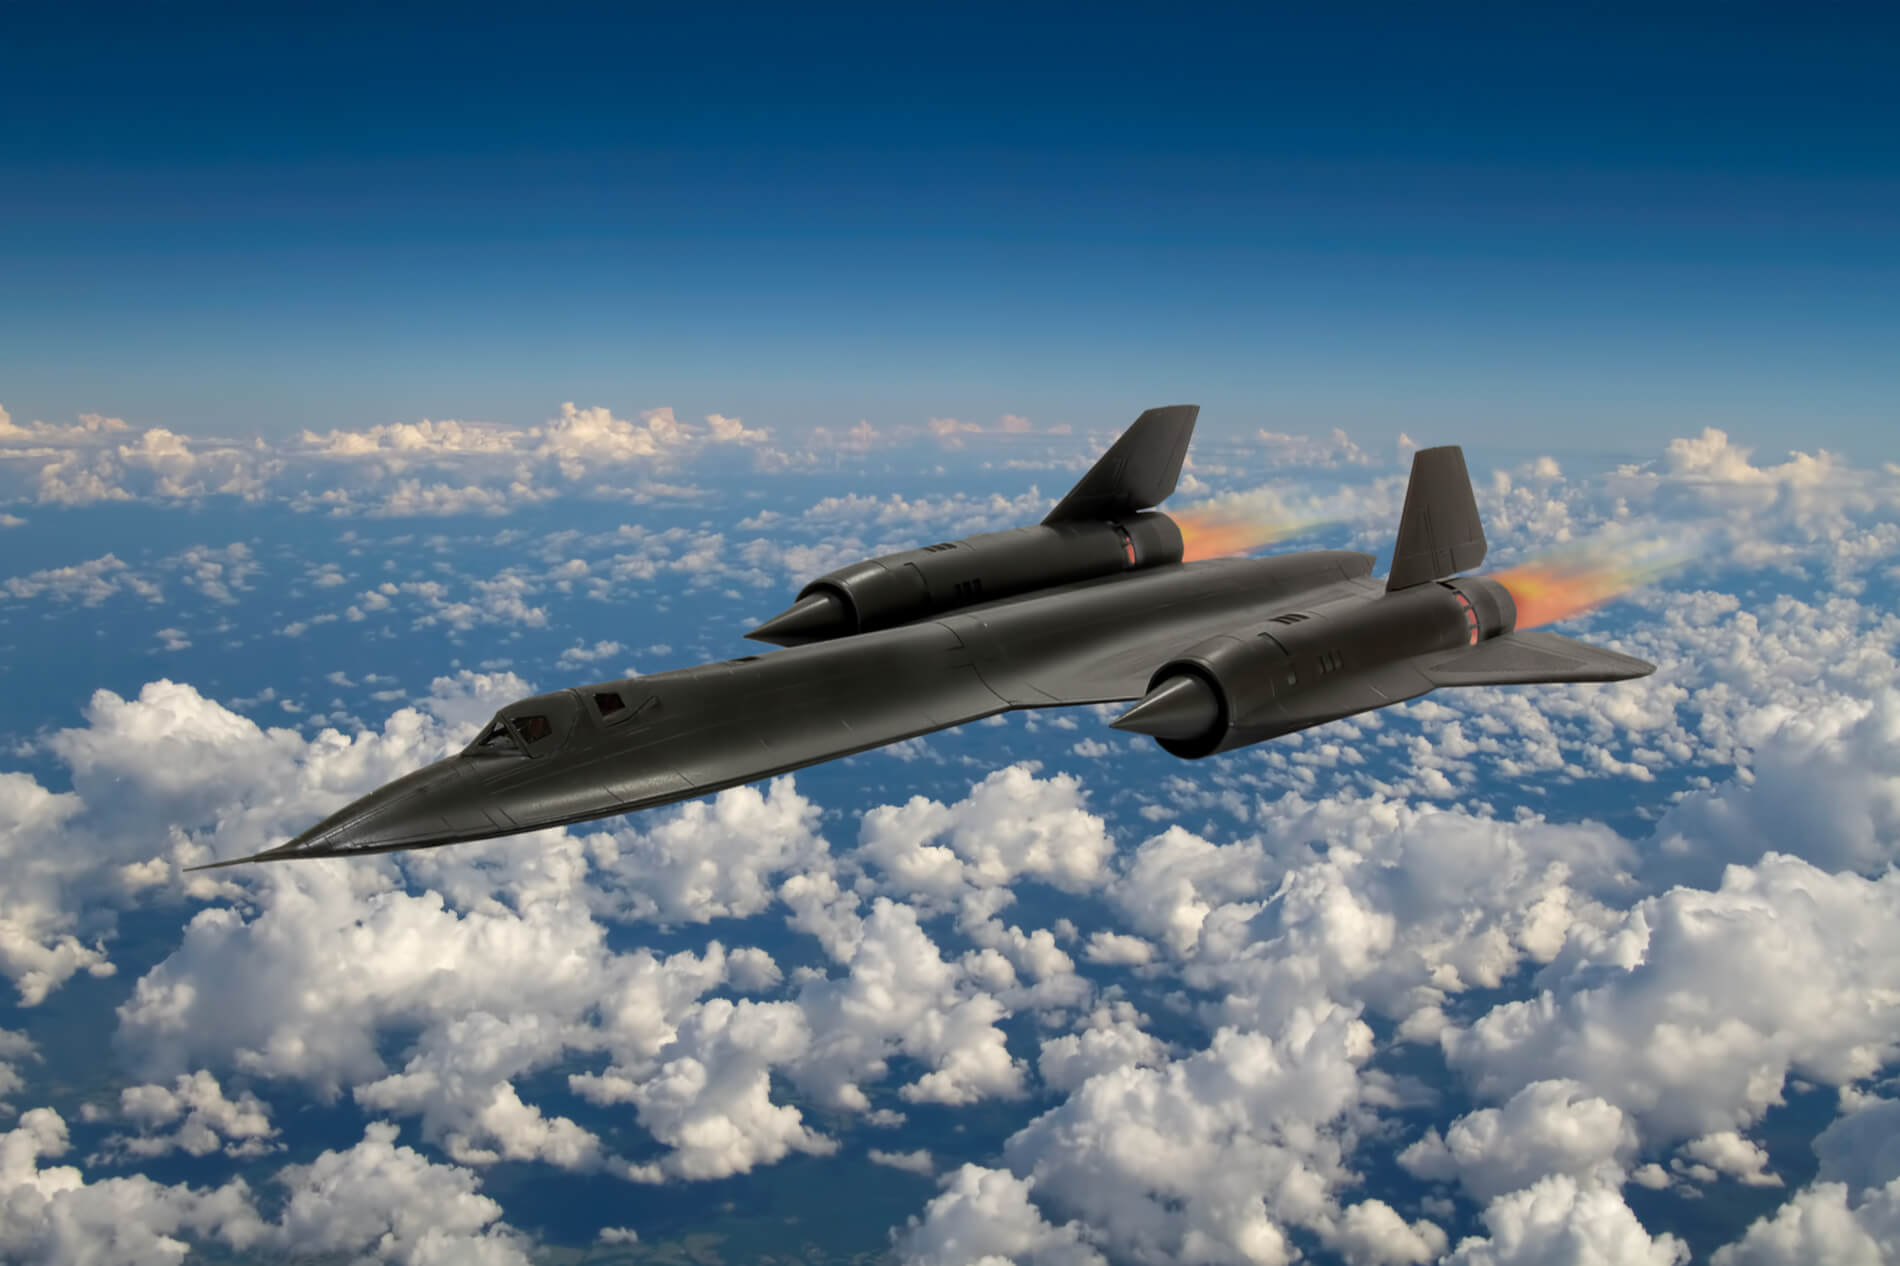 Lockheed SR-71 Blackbird - Fastest Plane in the World (Top Speed)